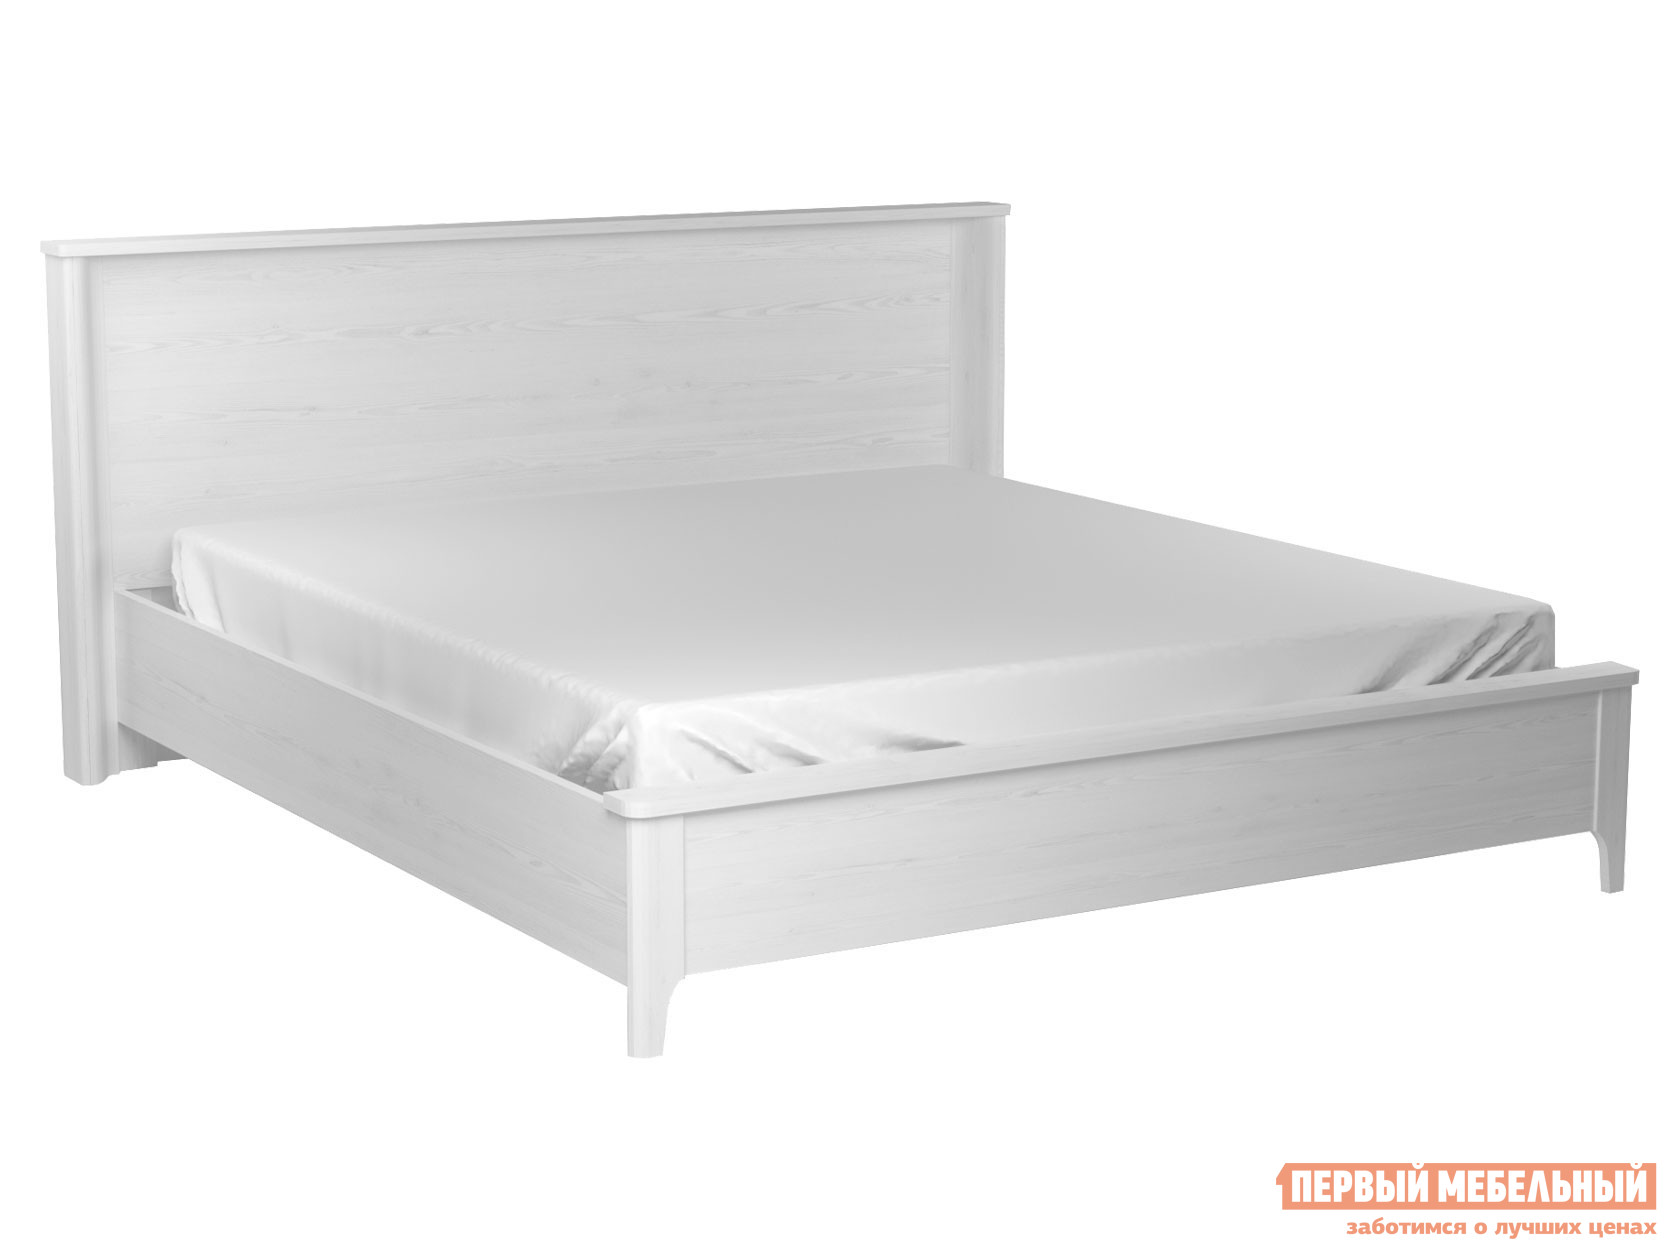 Двуспальная кровать  Клер Сосна Андерсон, 180х200 см